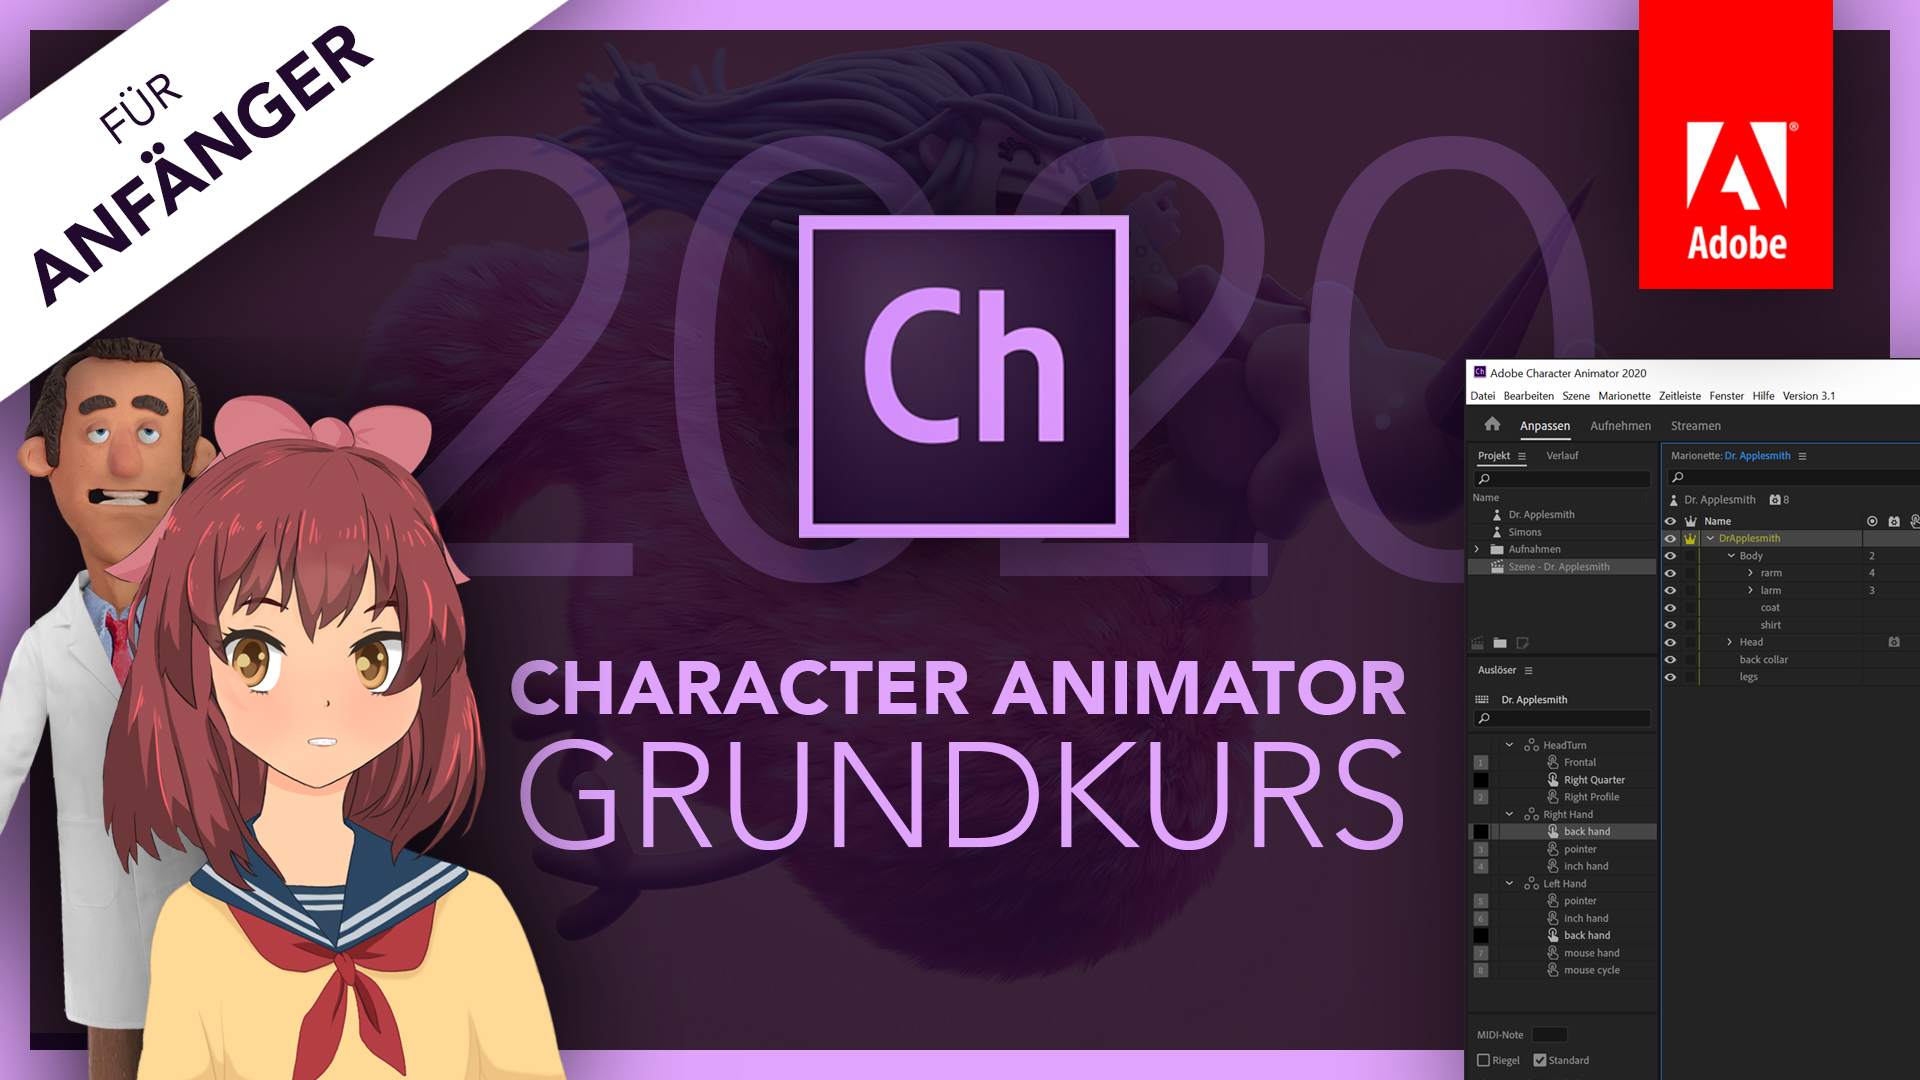 Adobe Character Animator 2020 (Grundkurs für Anfänger) Deutsch